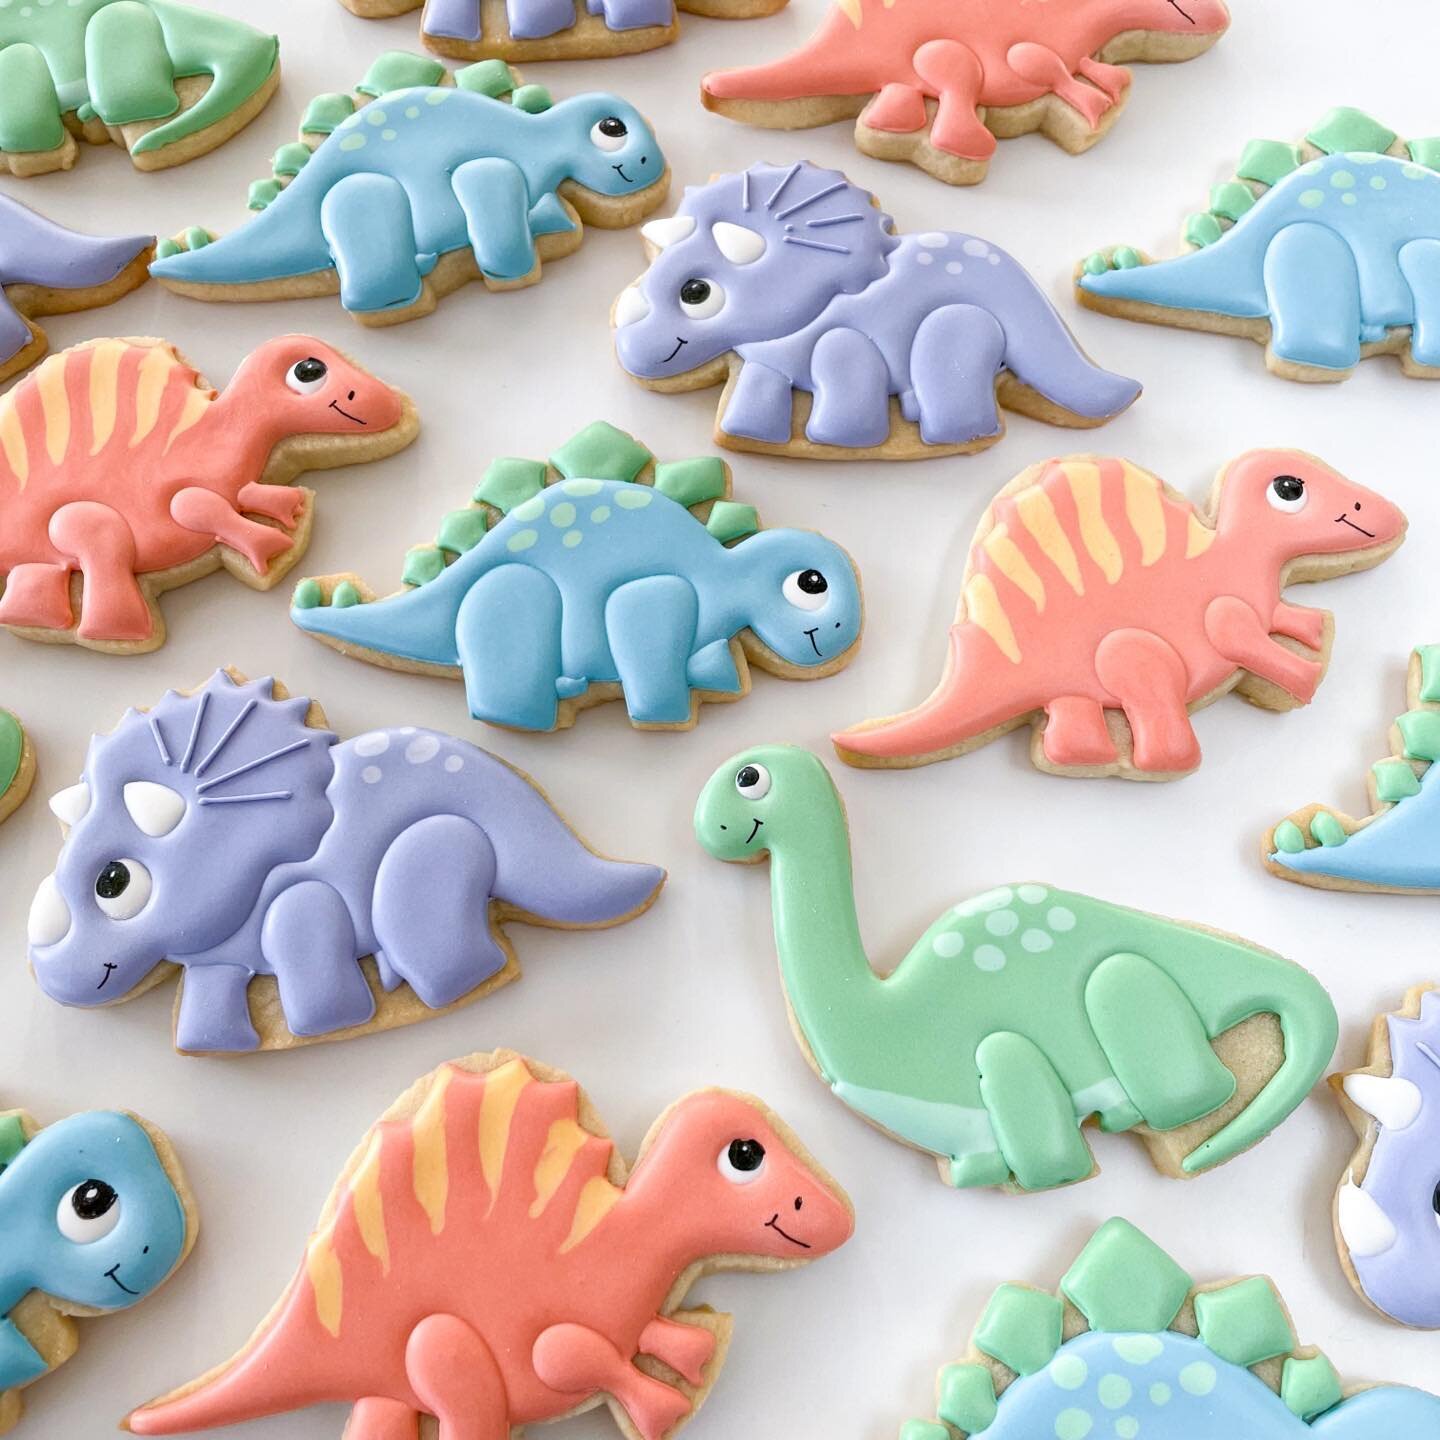 Colorful dinos on parade 🤍

#dinosaurcookies #decoratedcookies
#kidscookies